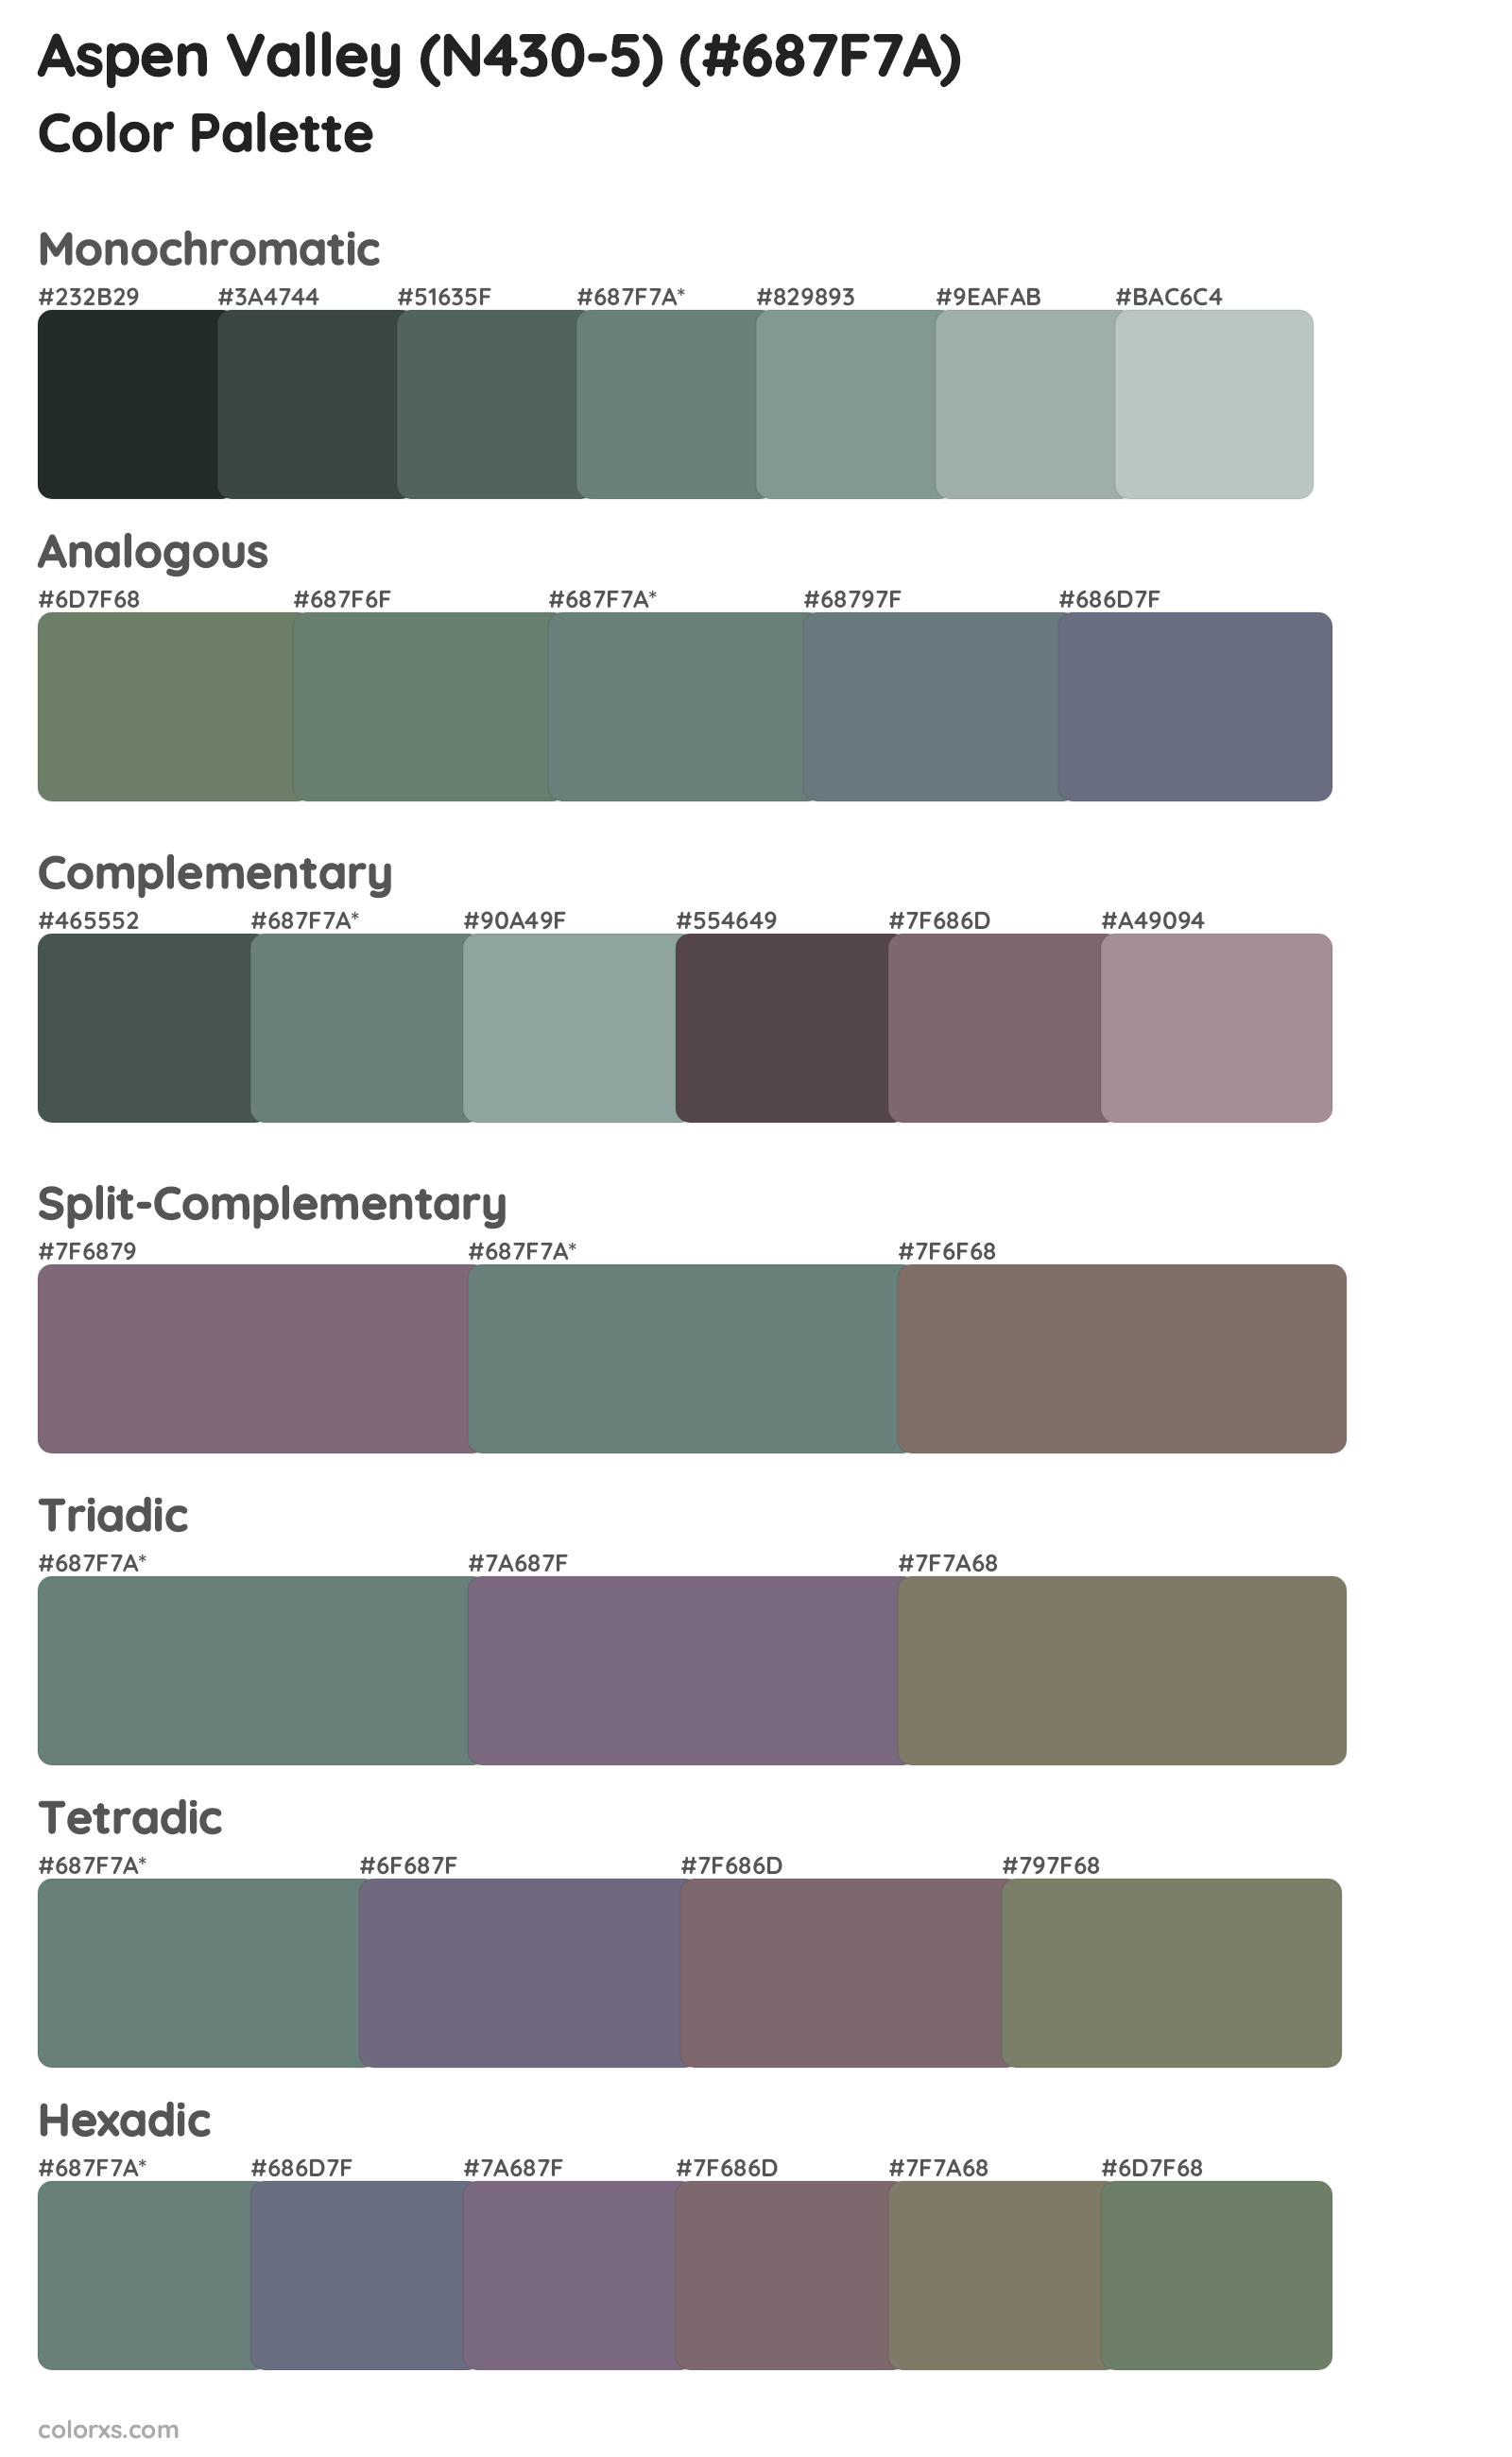 Aspen Valley (N430-5) Color Scheme Palettes